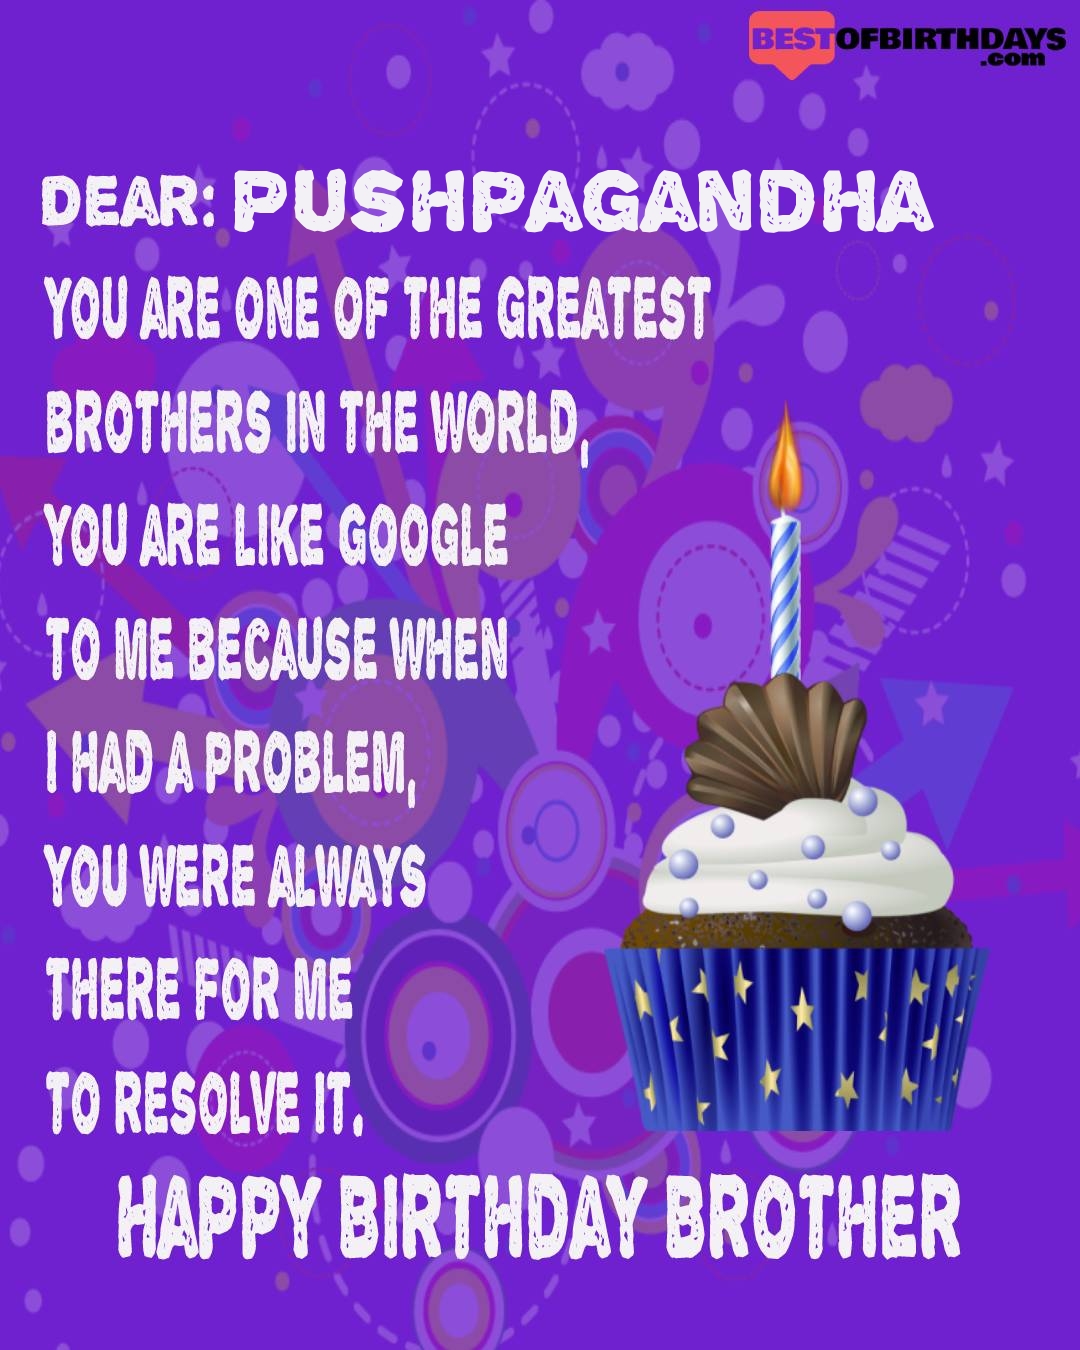 Happy birthday pushpagandha bhai brother bro